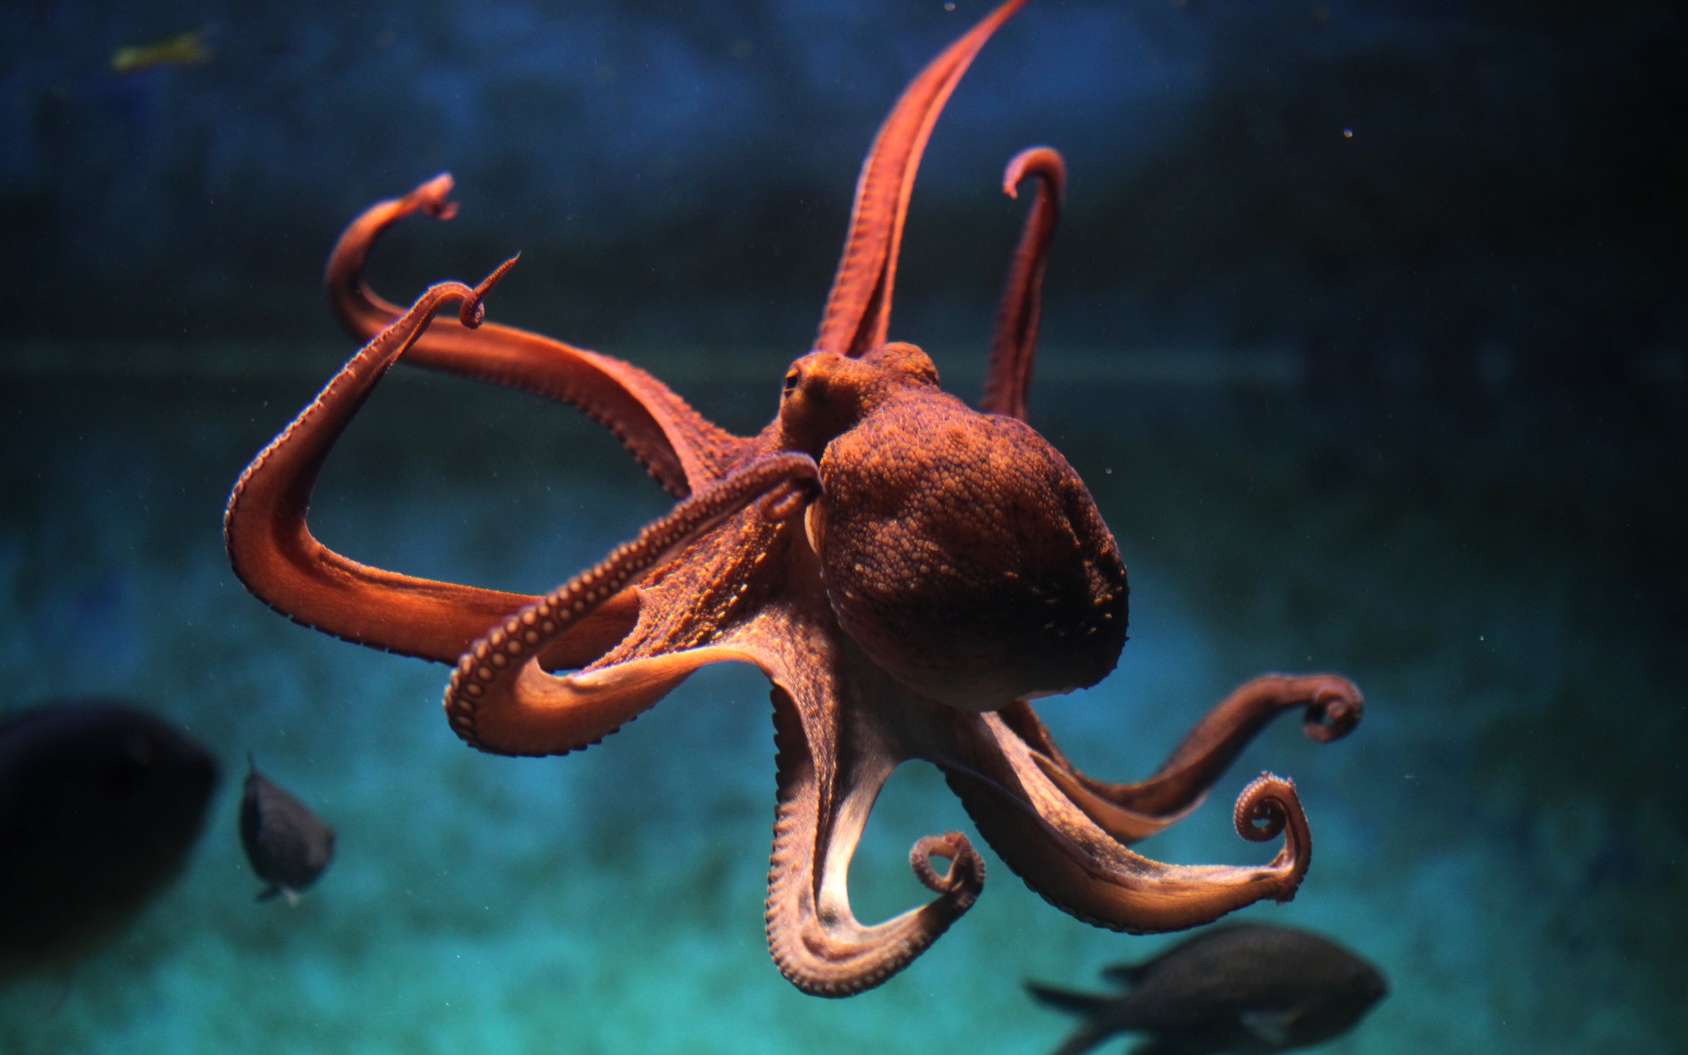 Il s'en passe des choses dans ces tentacules ! © Wladimir Wrangel, Fotolia